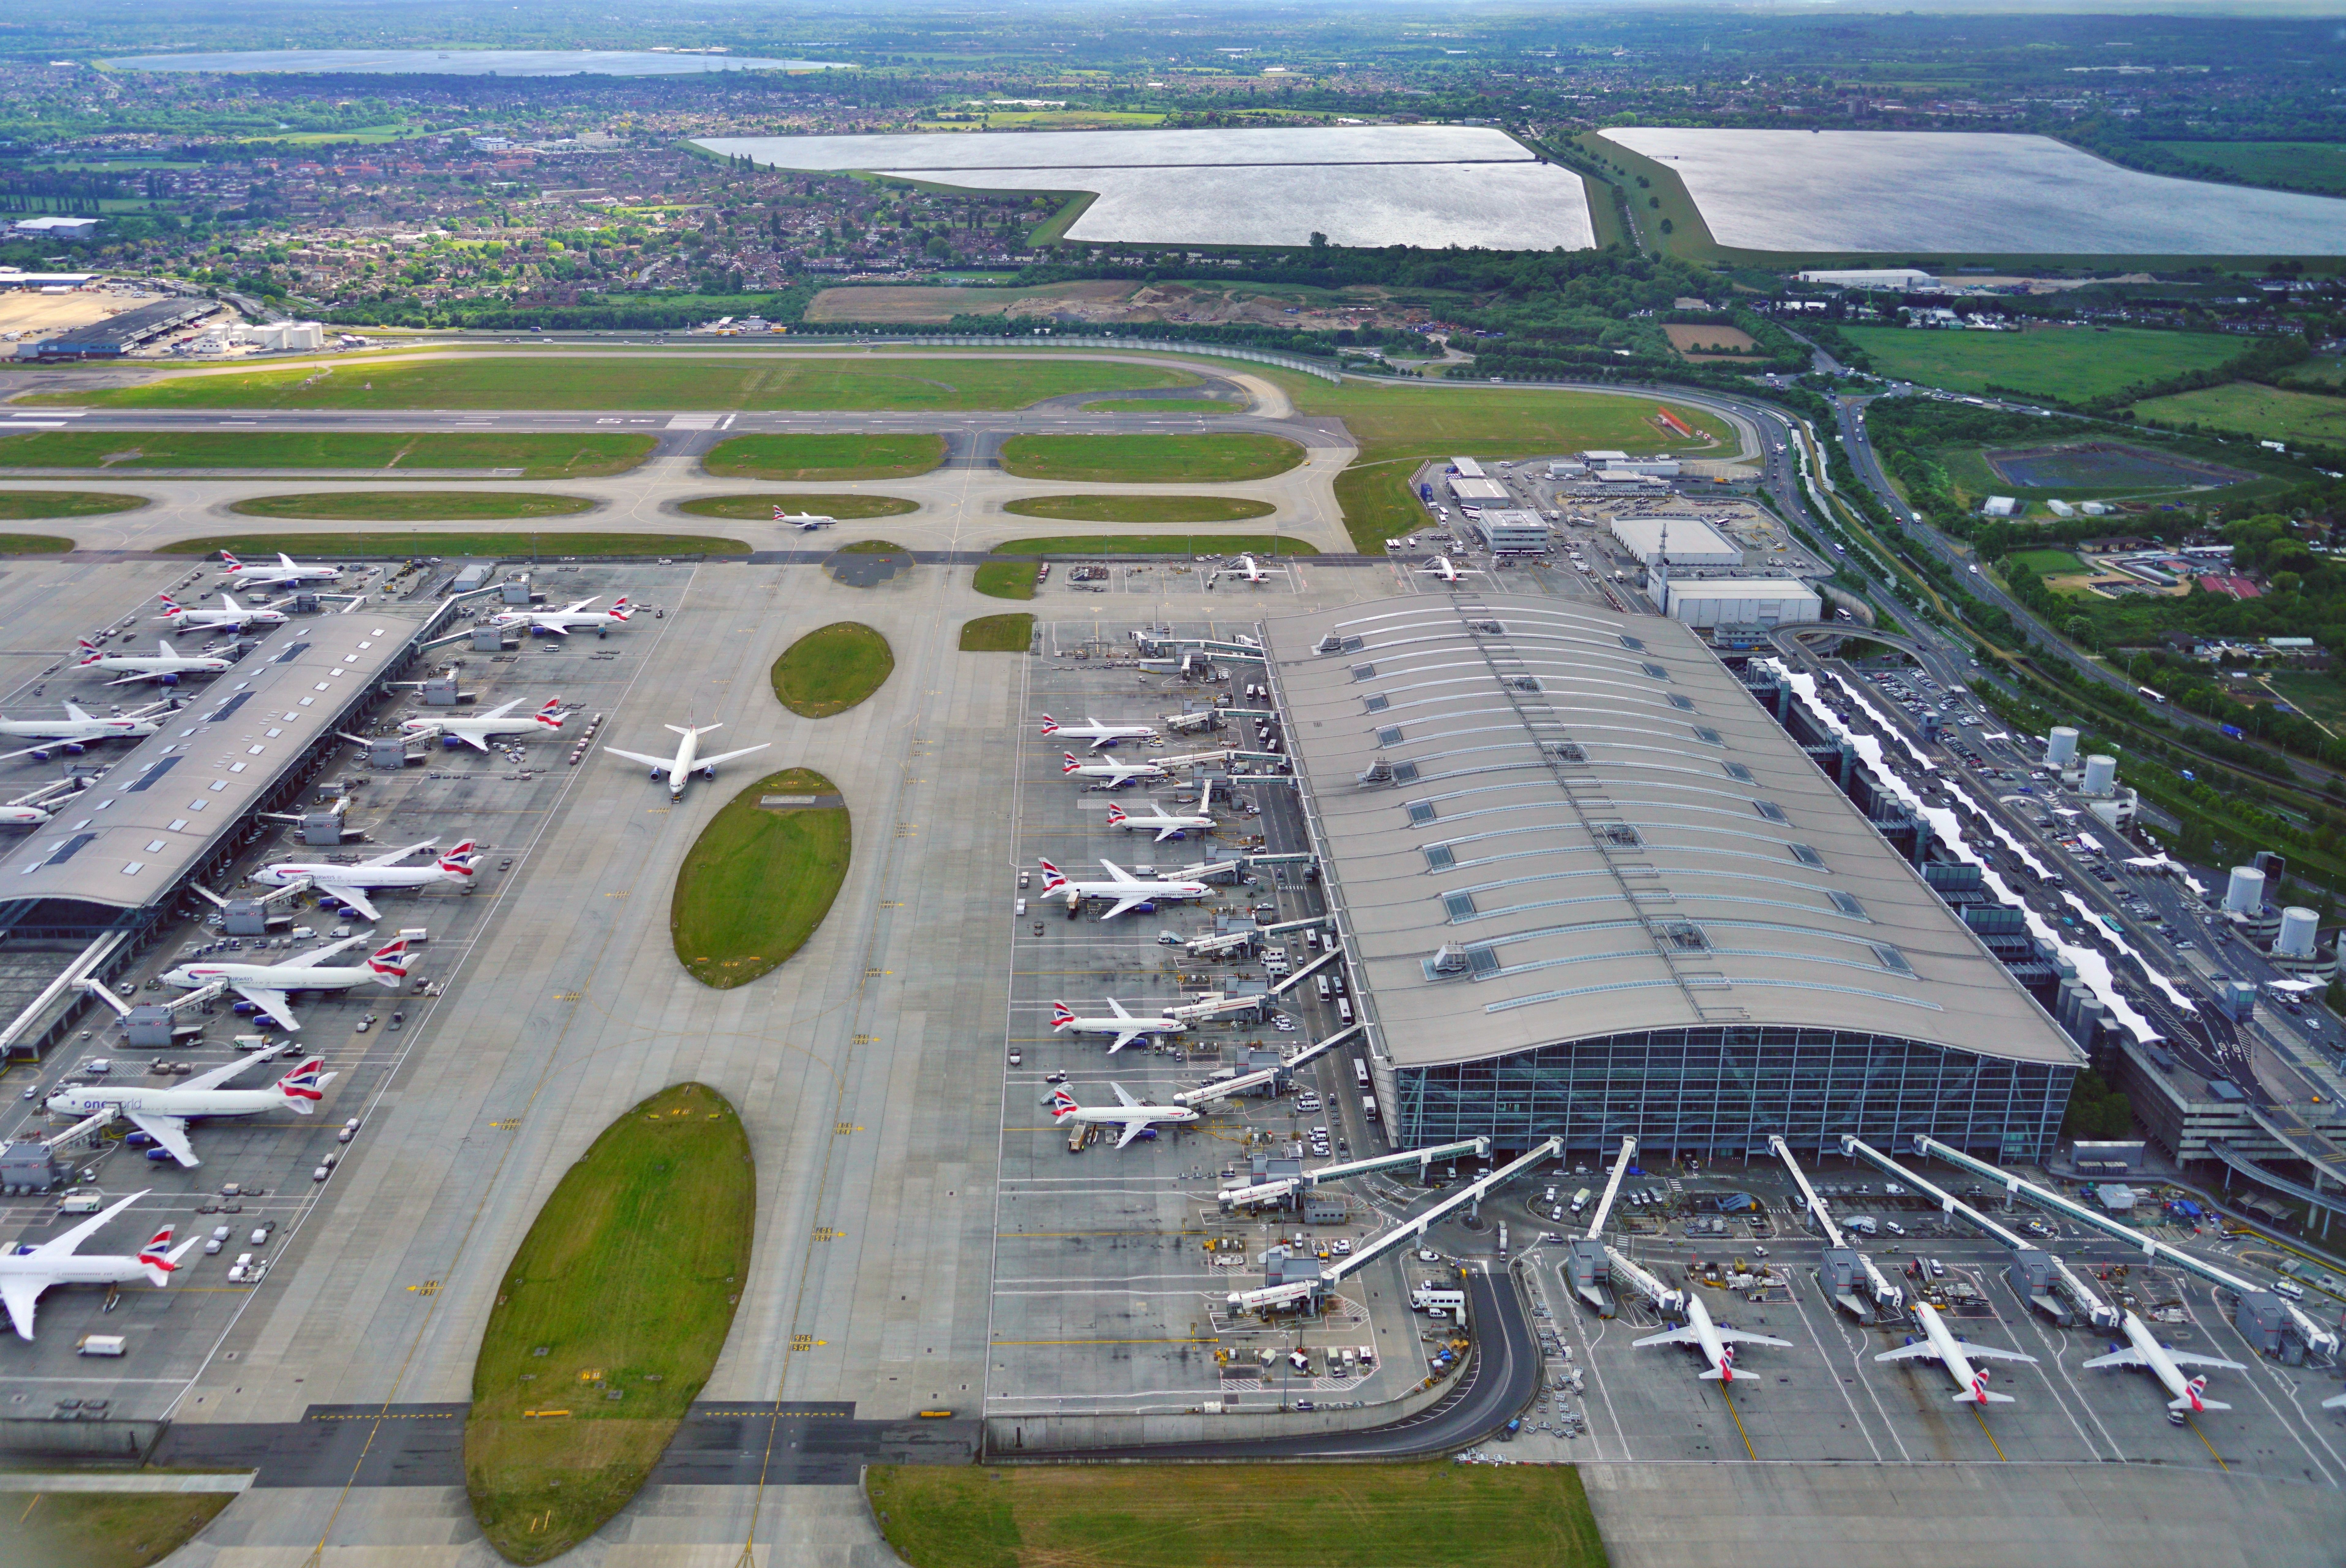 An aerial view of London Heathrow's Terminal 5.